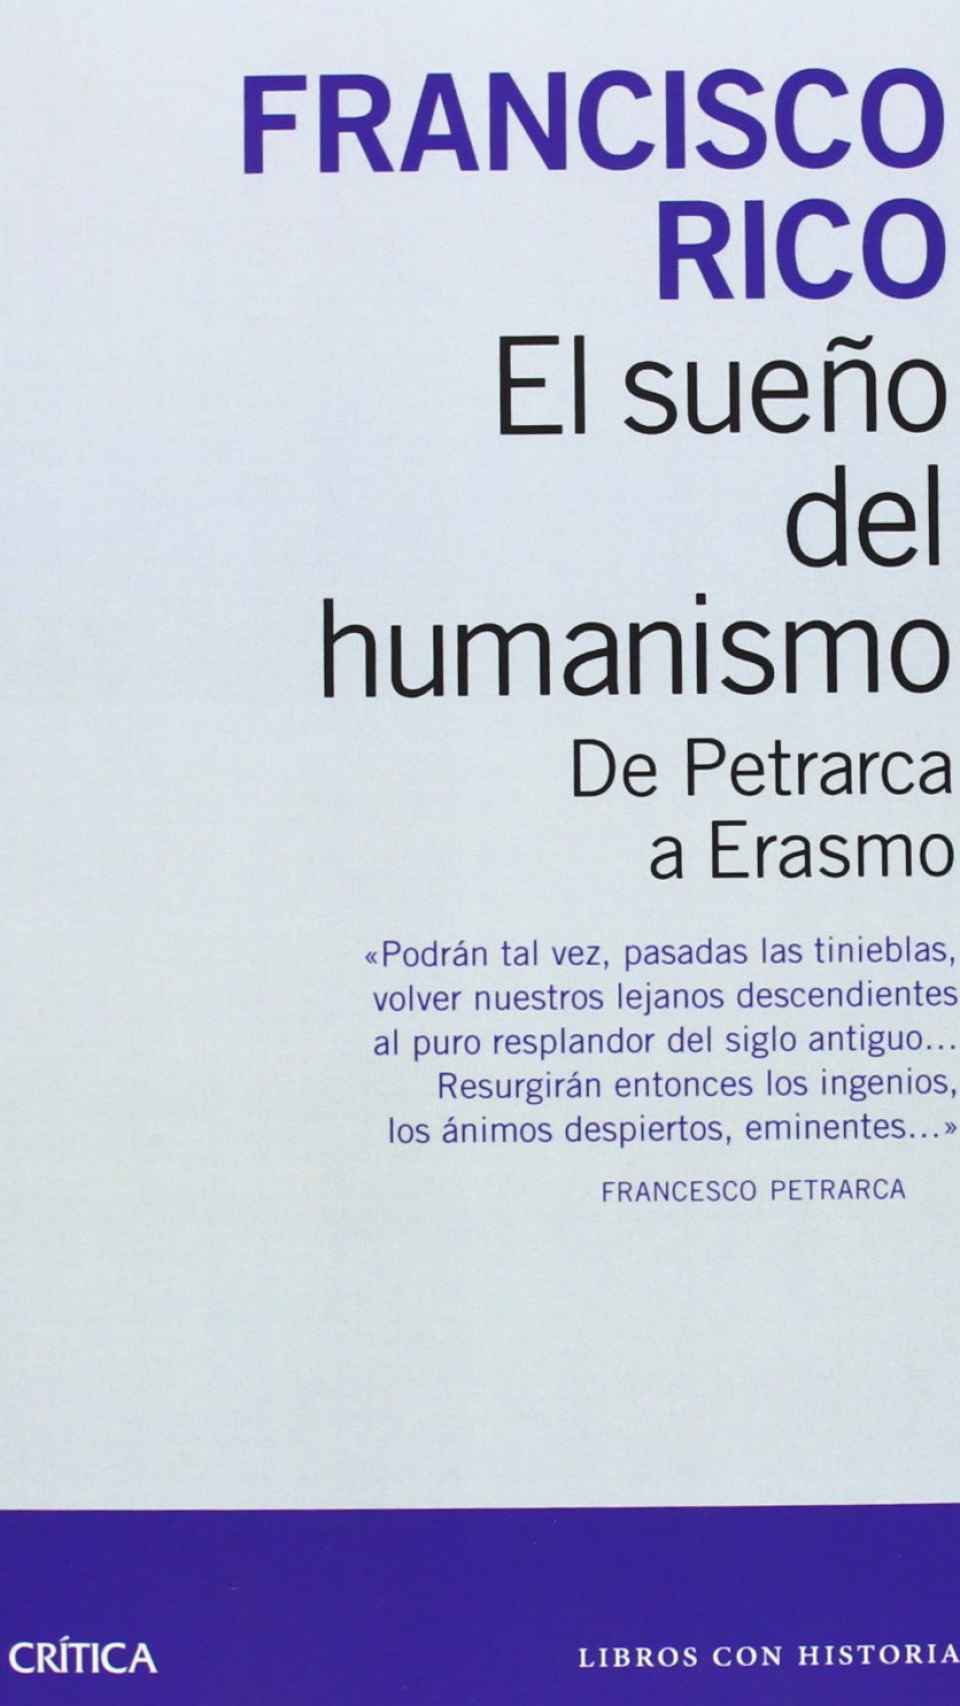 'El sueño del humanismo'